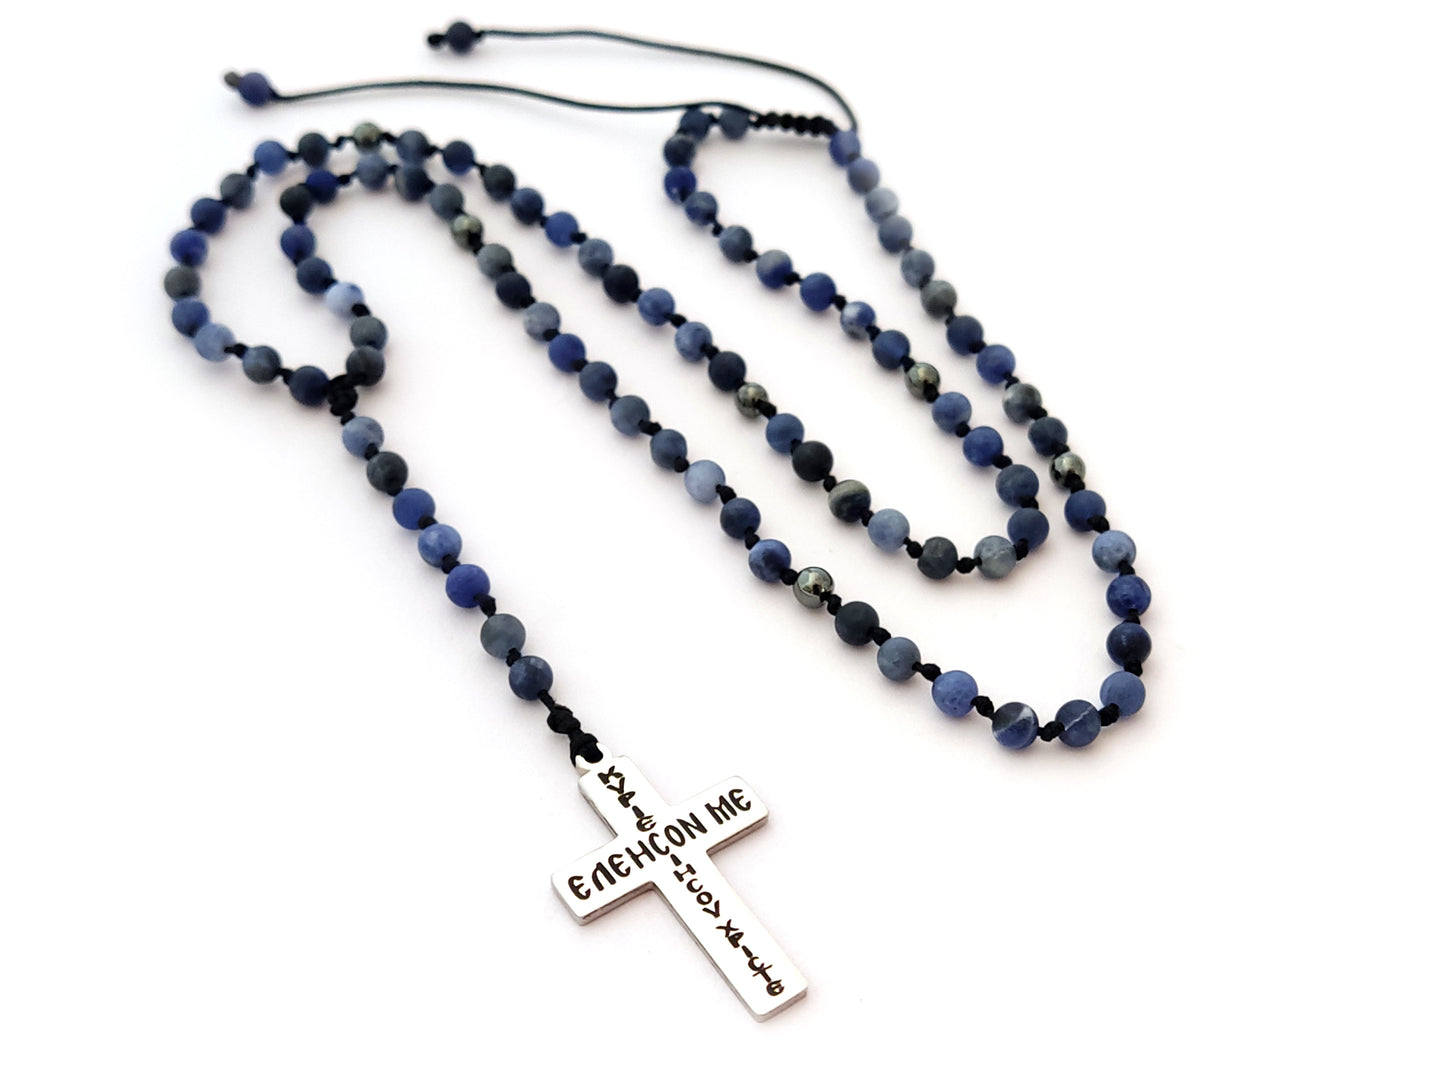 Halskette mit griechischem Kreuz und echten blauen Sodalithsteinen